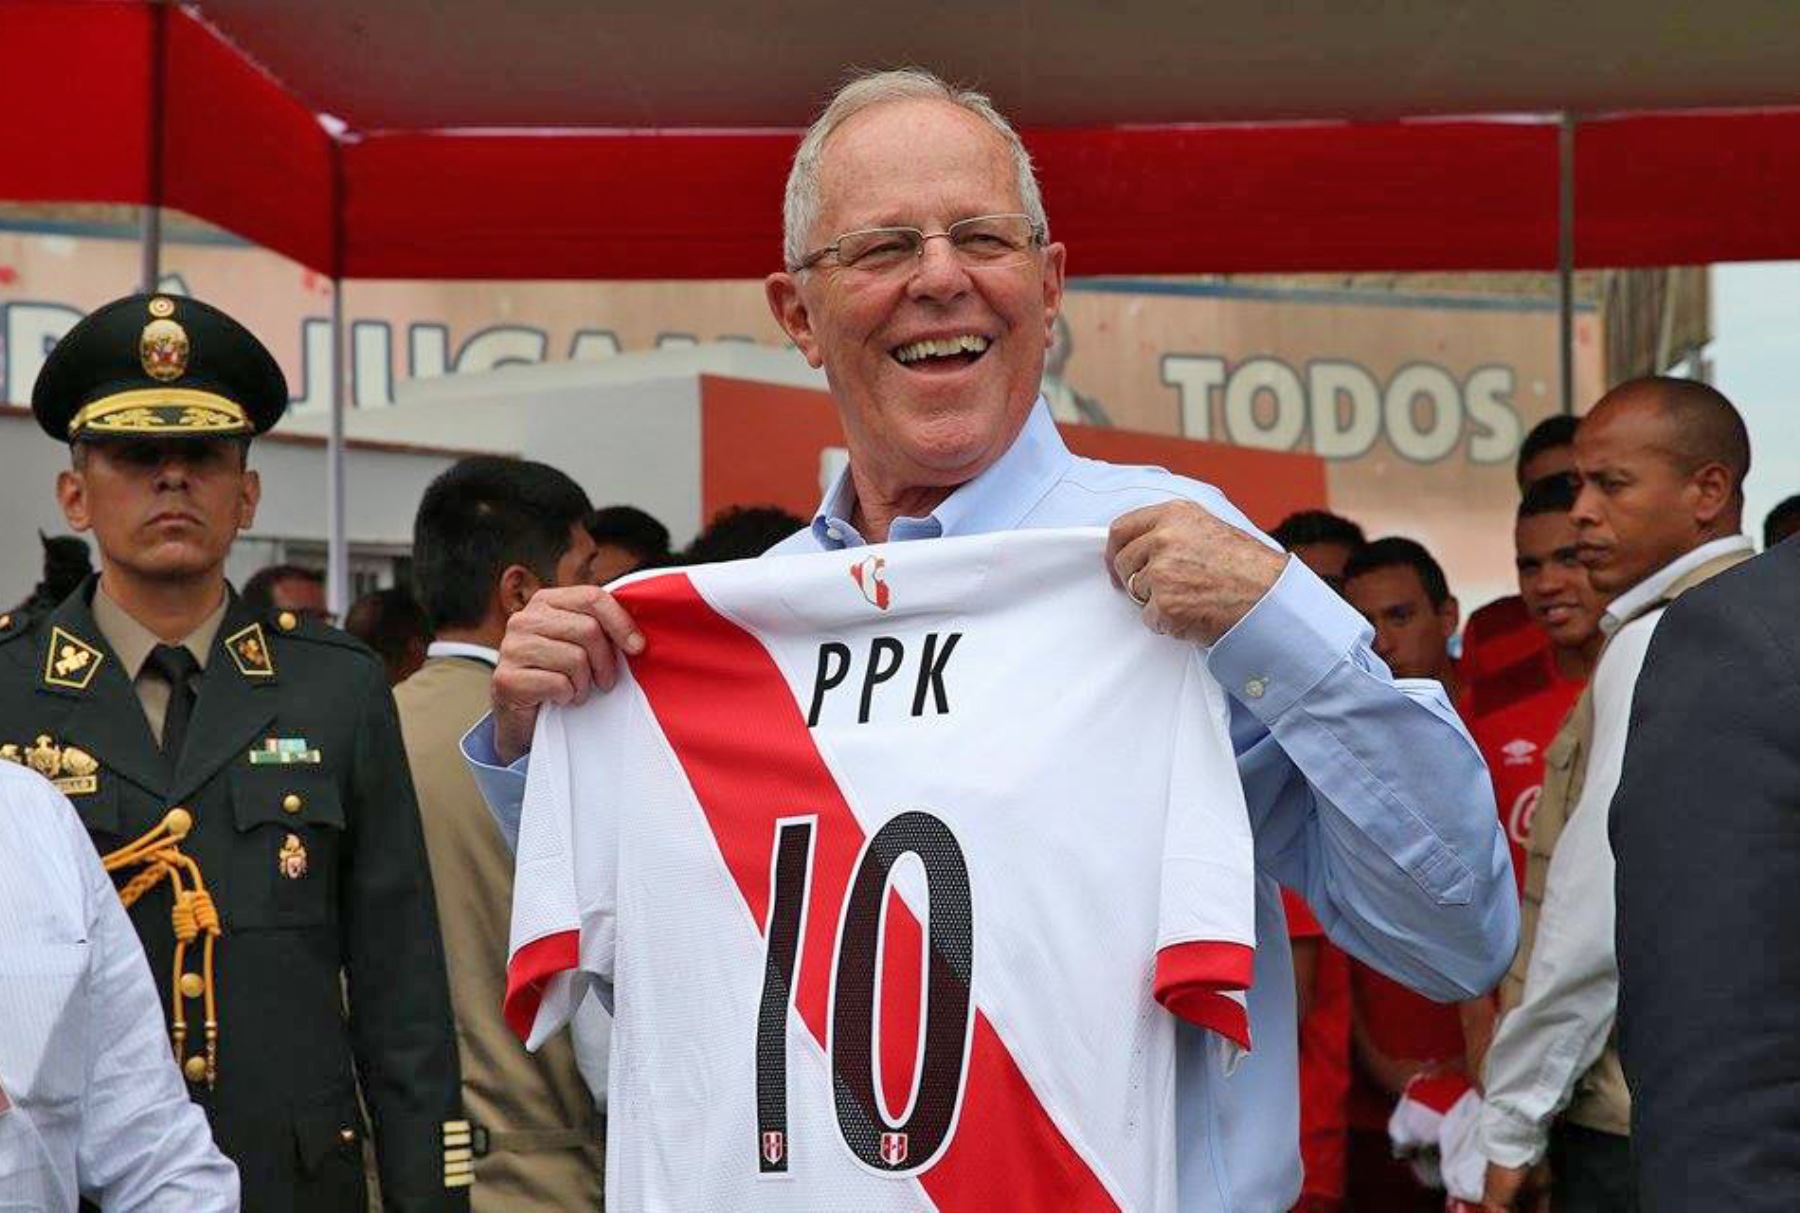 El presidente de la República, Pedro Pablo Kuczynski, visita a los integrantes de la selección peruana de fútbol sub 17. Foto: ANDINA/ Dante Zegarra